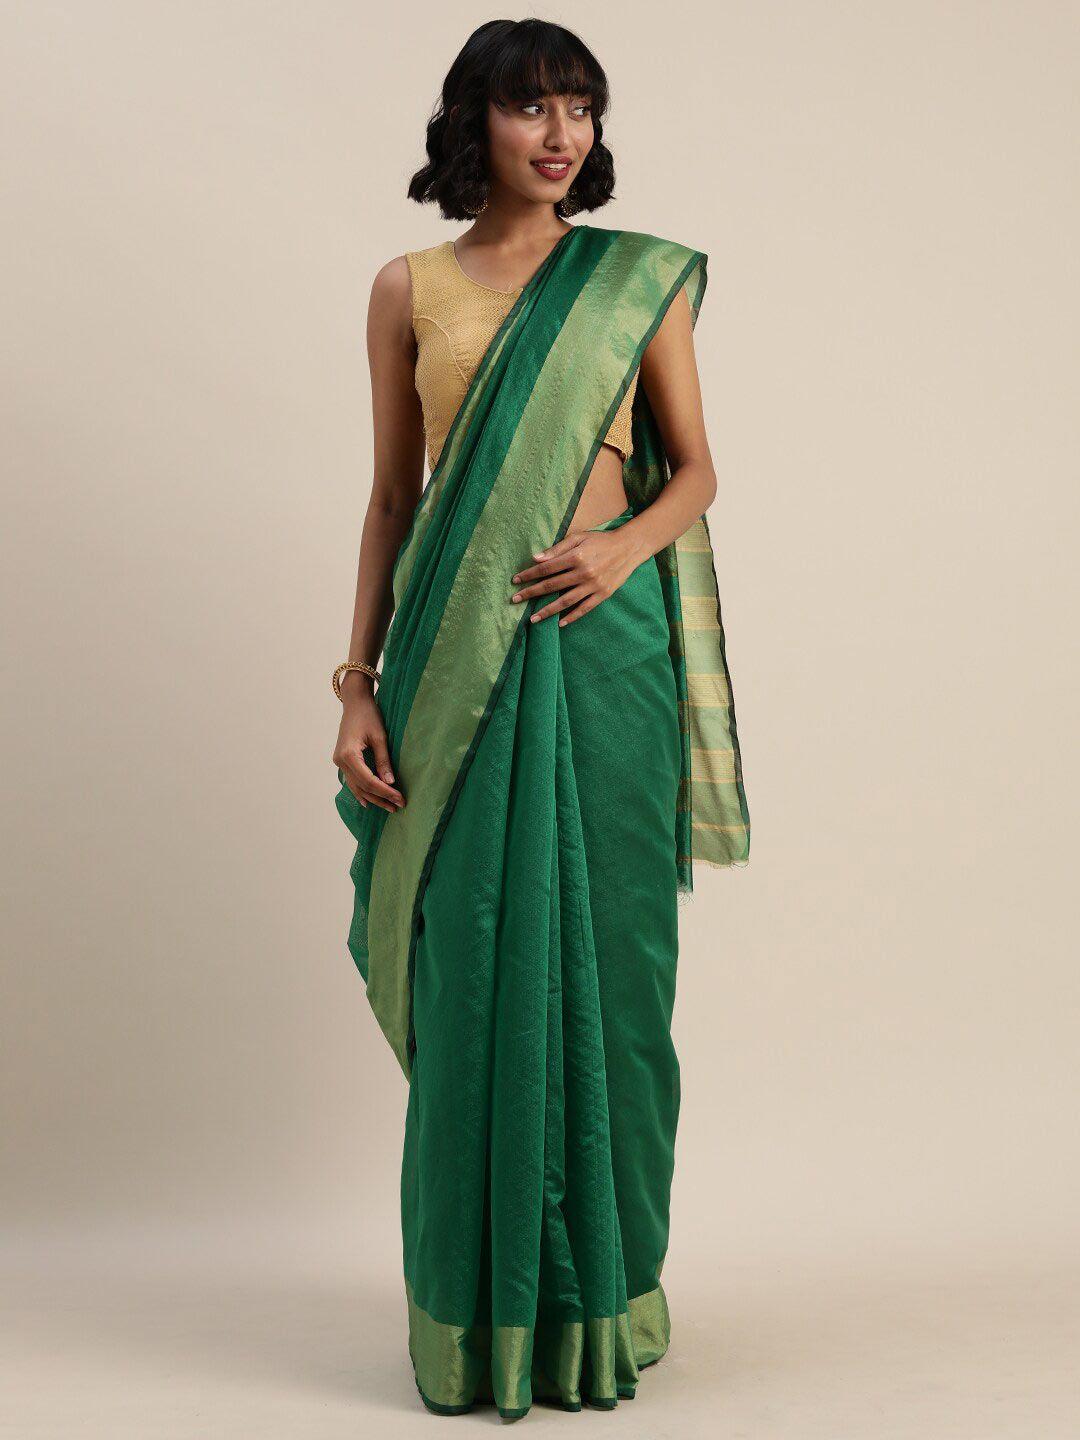 florence green & gold-toned art silk saree